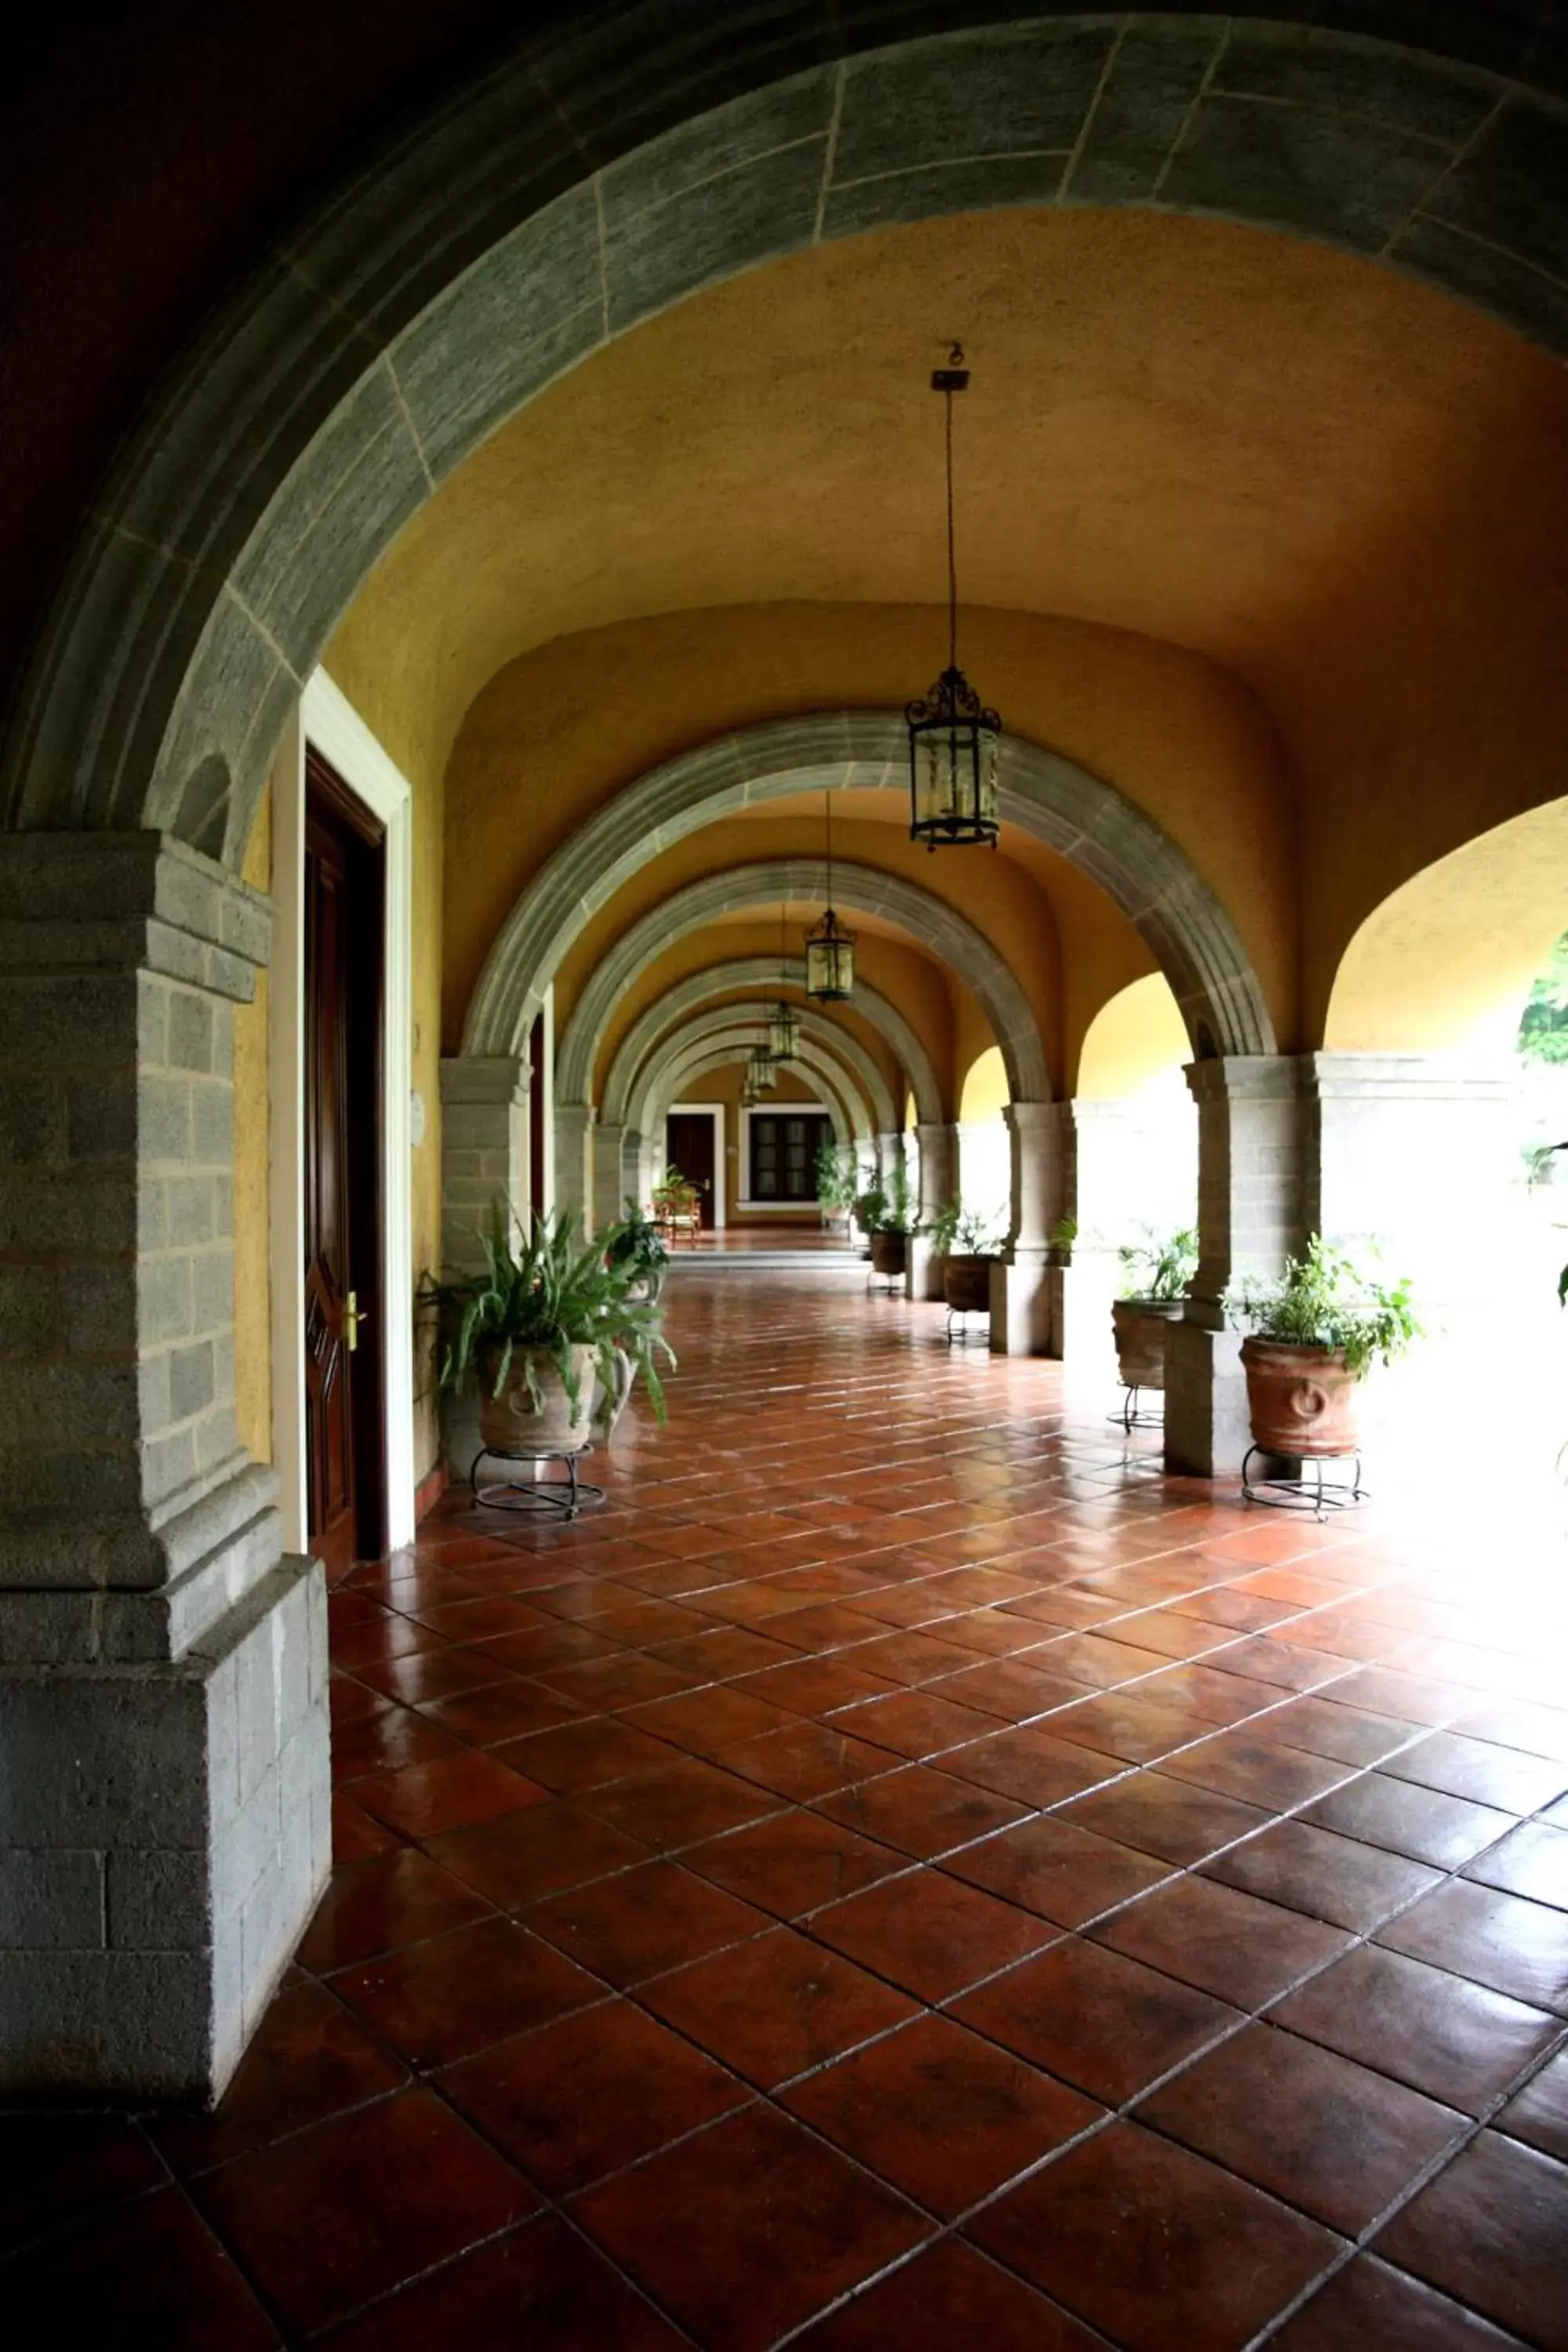 Lobby or reception in Fiesta Americana Hacienda San Antonio El Puente Cuernavaca